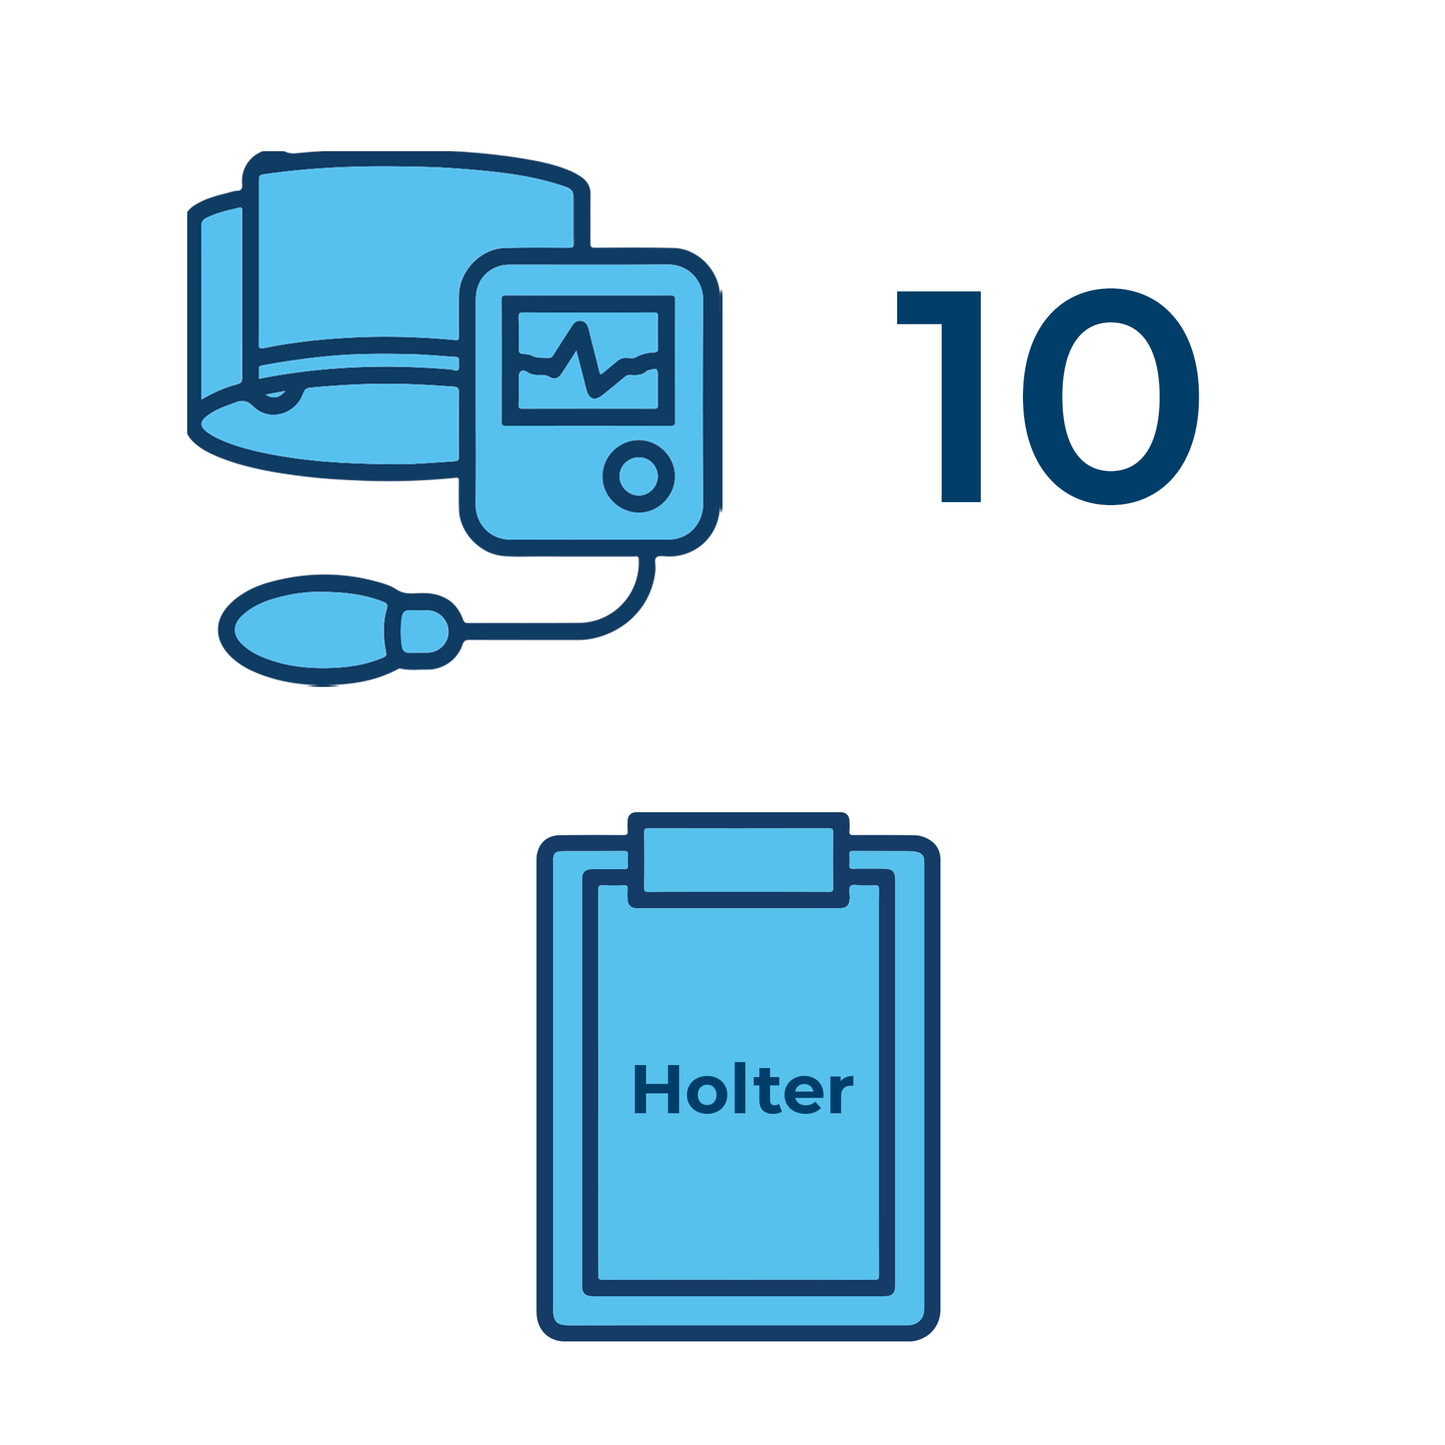 10 referti standard Holter pressorio